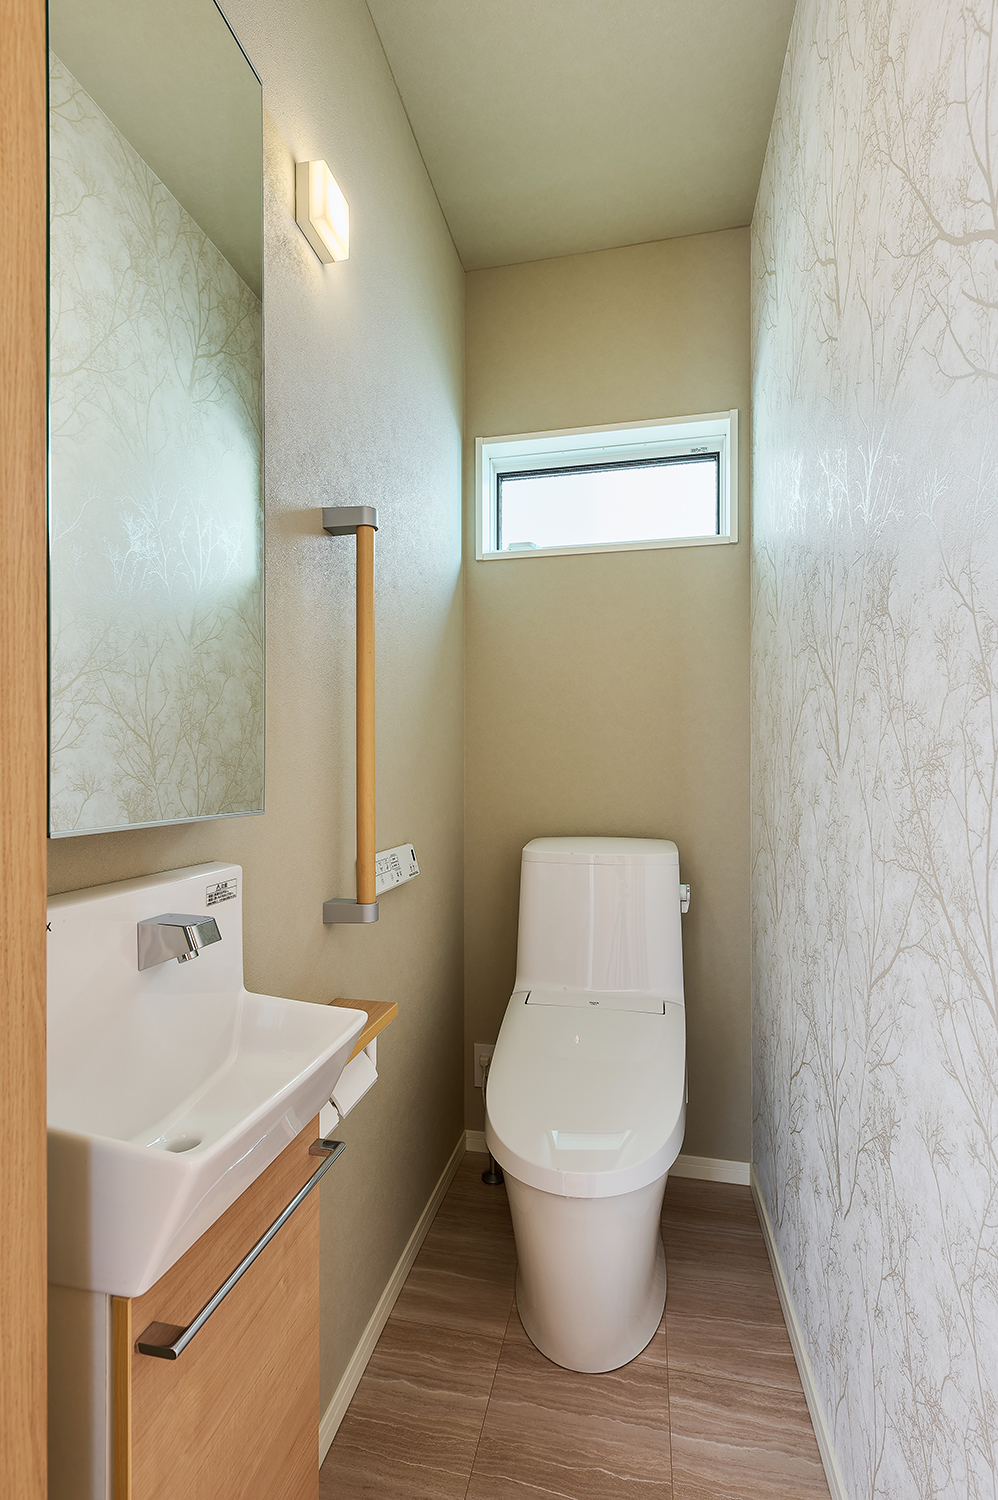 T-3／トイレはバリアフリーに配慮した手すりや大きな鏡など、快適に使用できるような工夫が施されています。